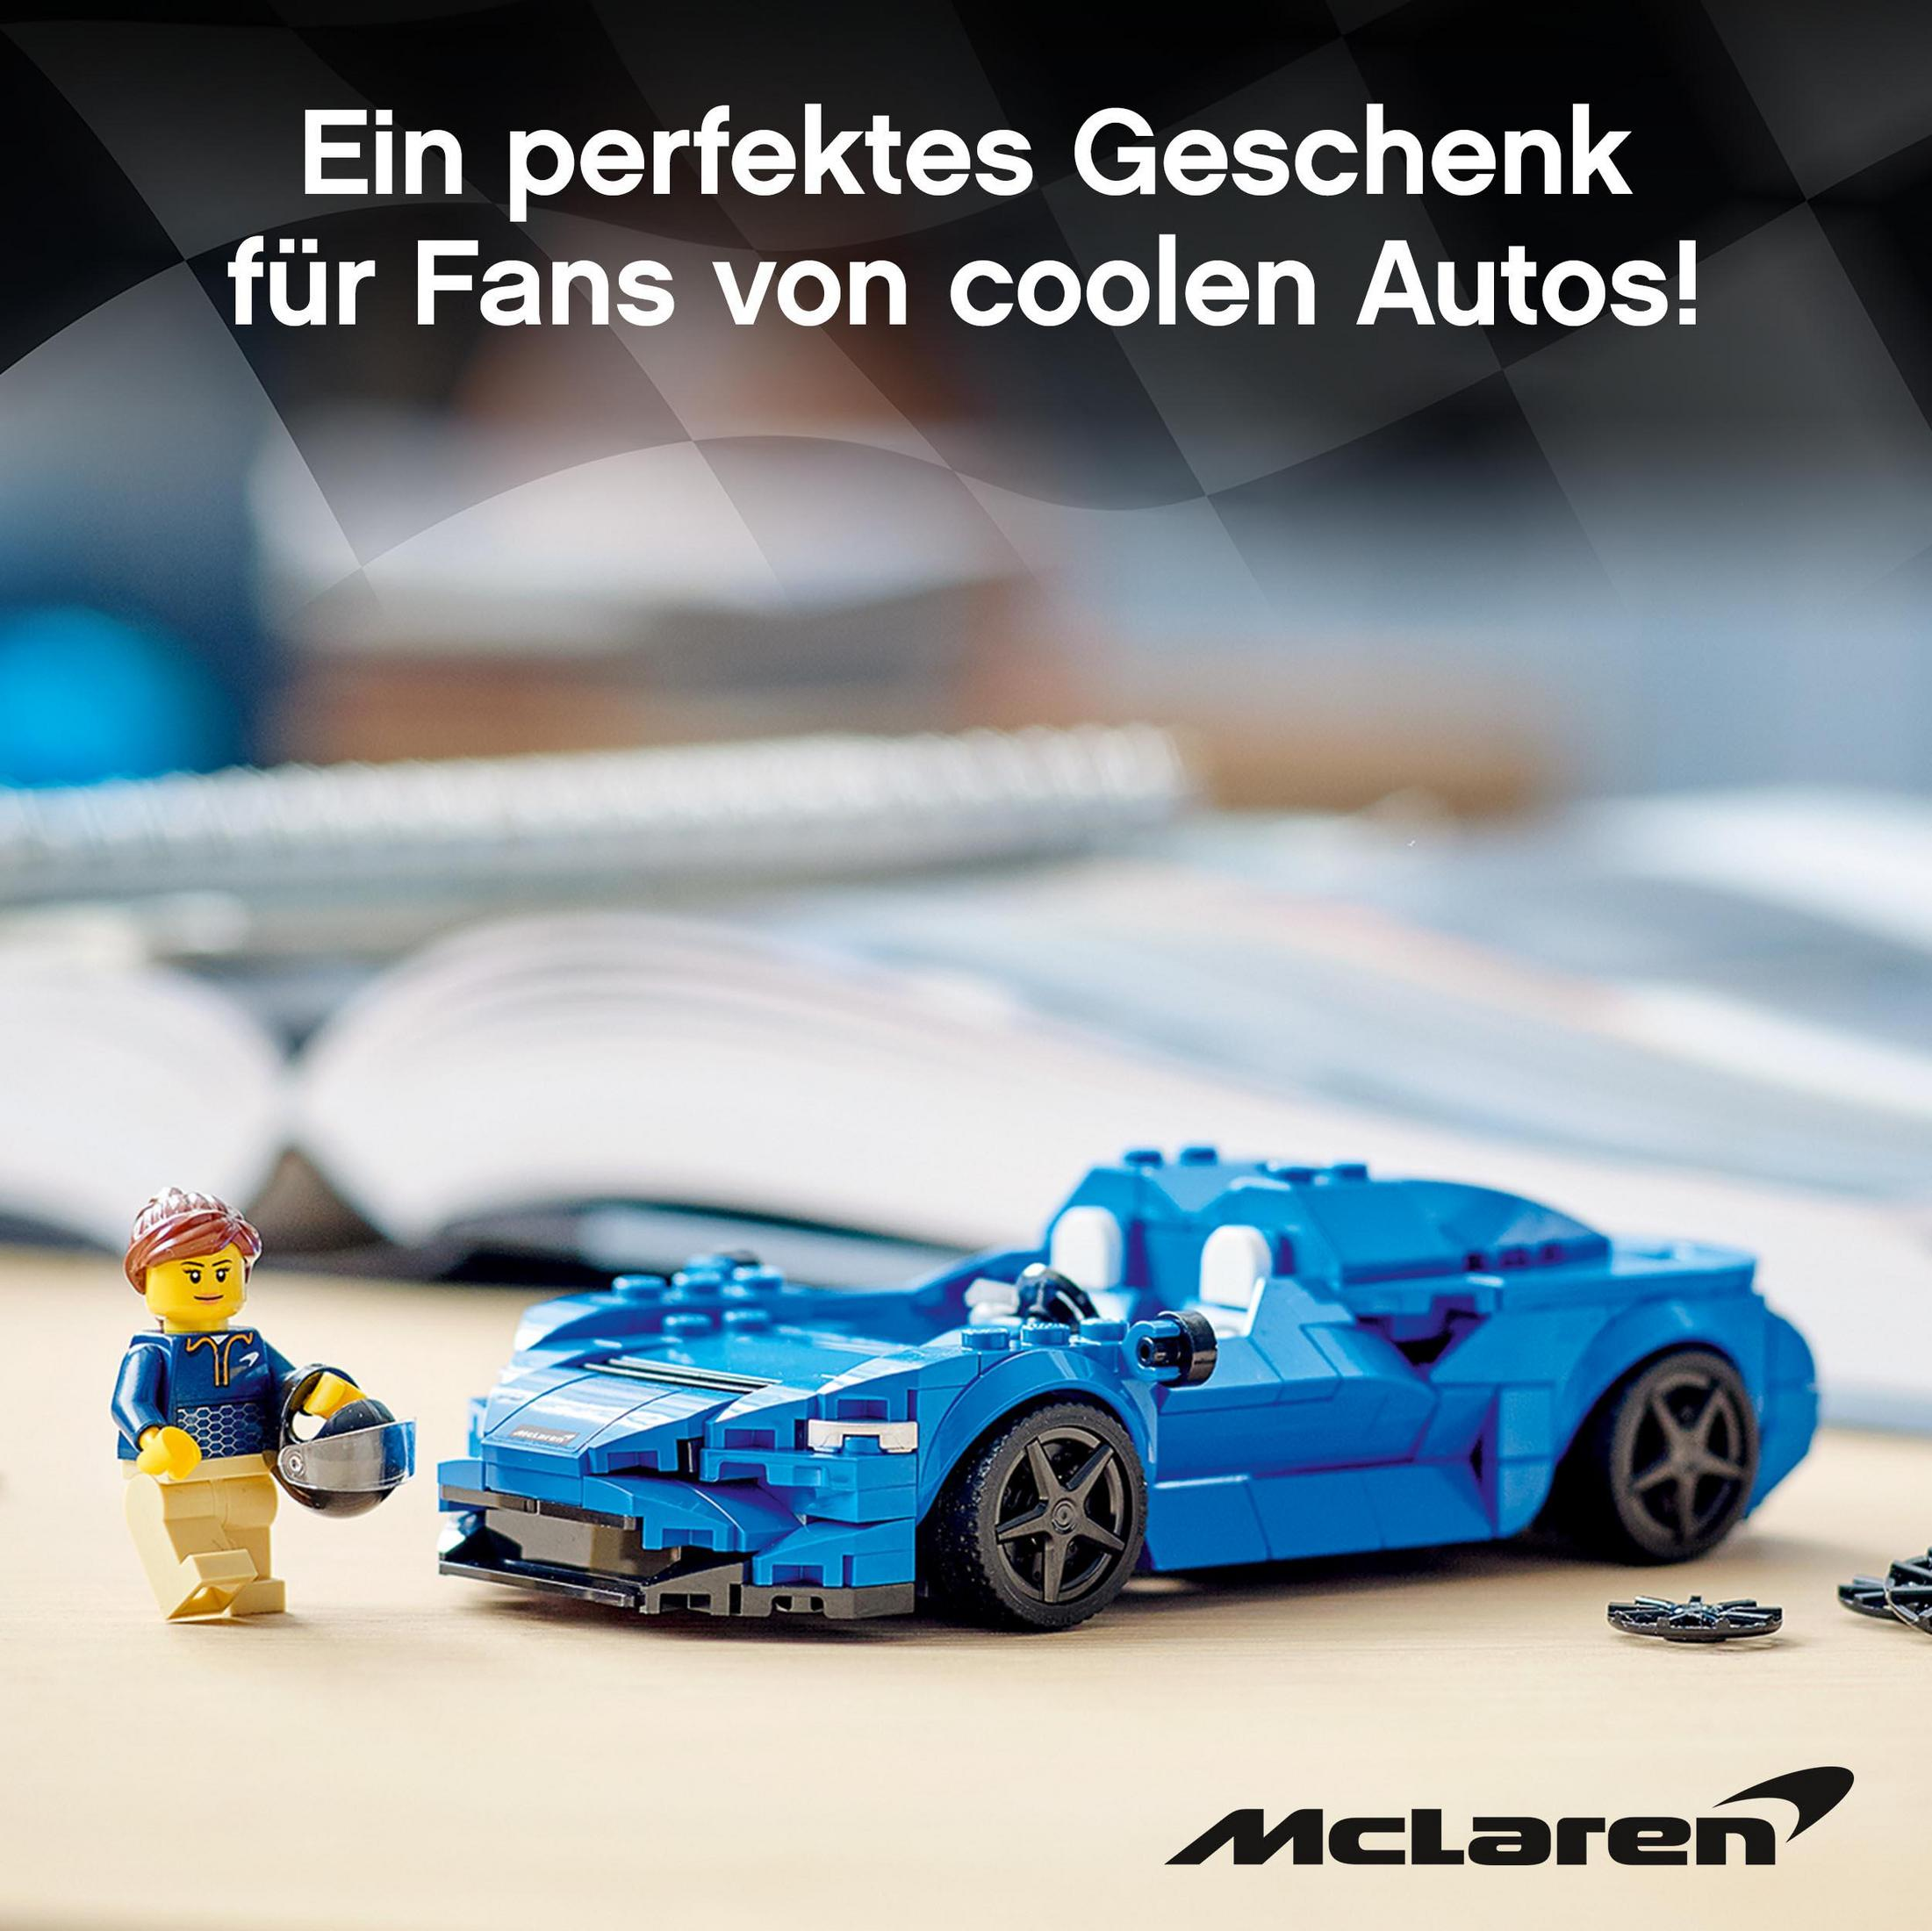 Champions McLaren Speed 76902 LEGO Bausatz Elva